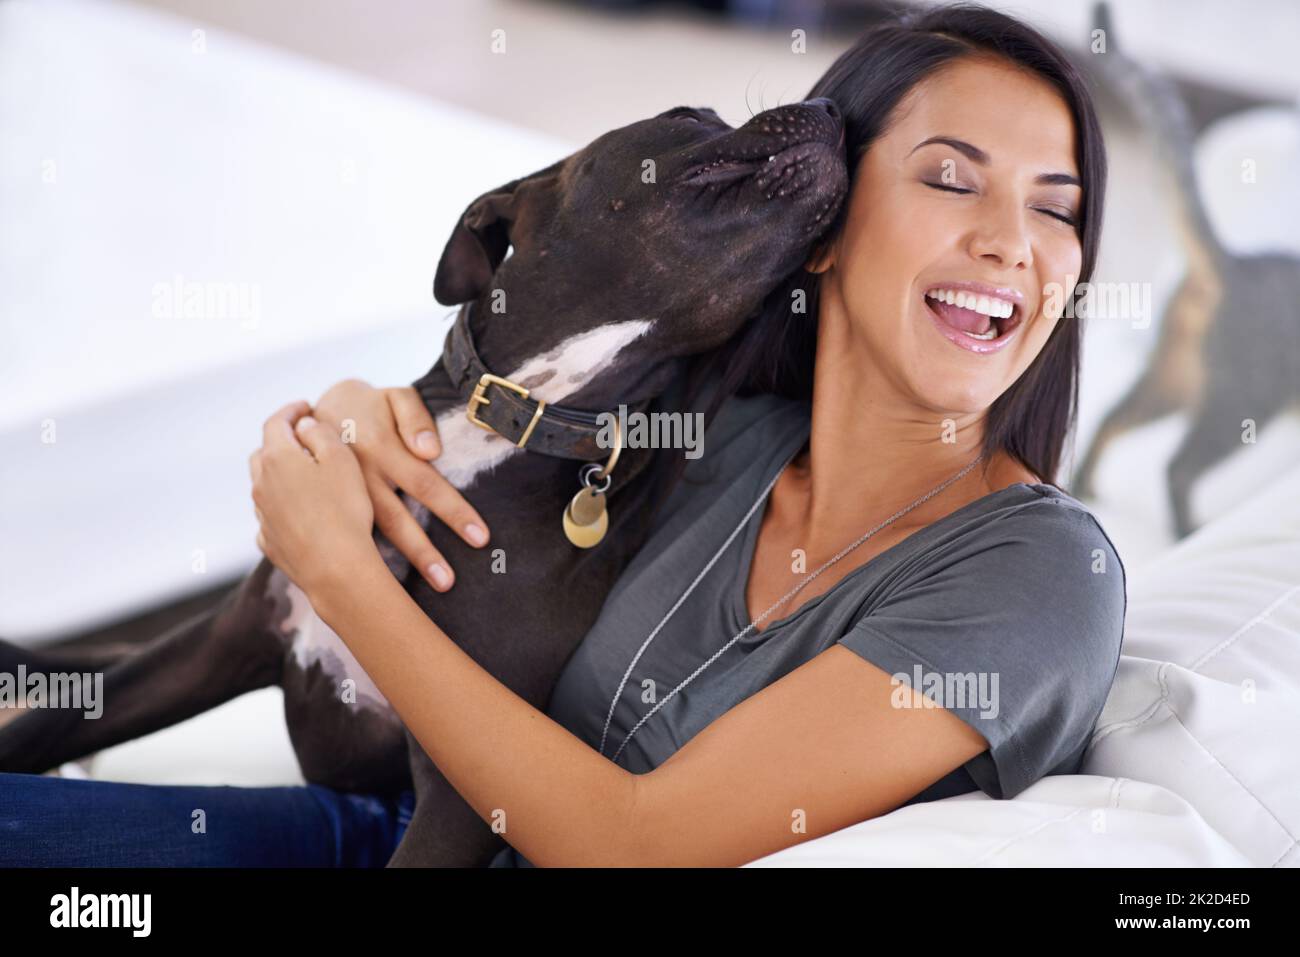 Chien de compagnie. Prise de vue d'une jeune femme attrayante en train d'apprécier un câlin avec son chien à la maison. Banque D'Images